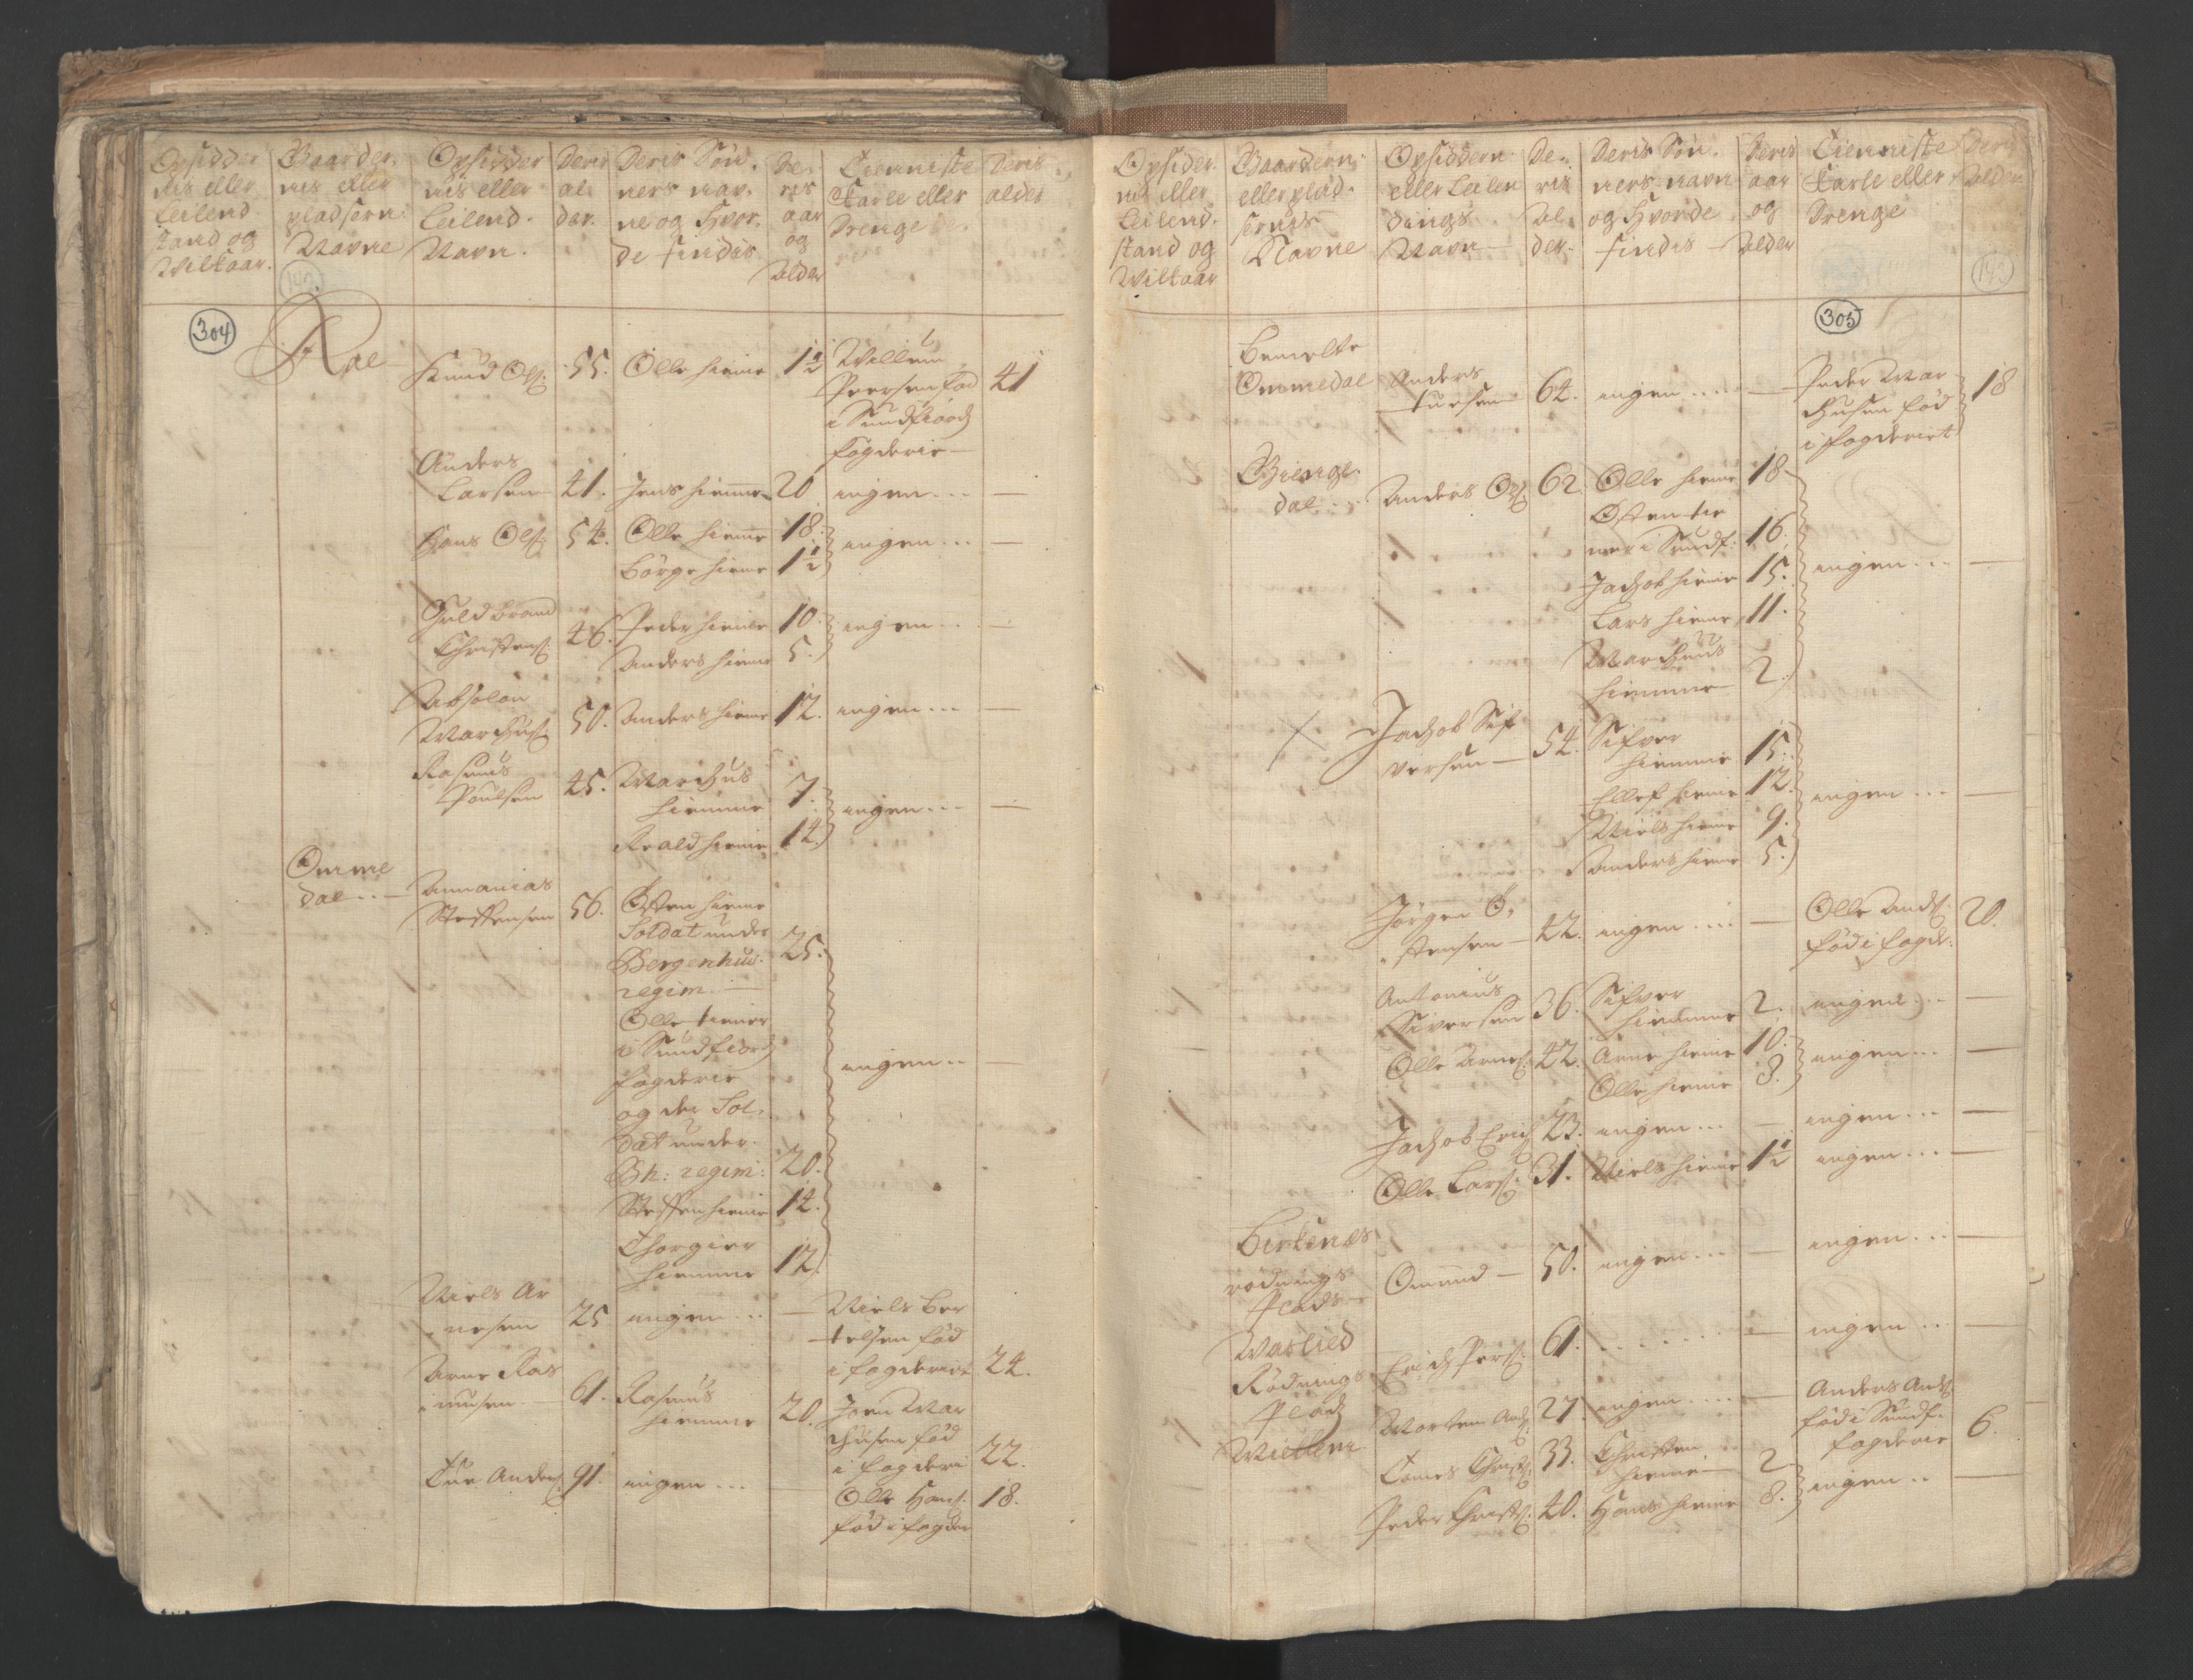 RA, Census (manntall) 1701, no. 9: Sunnfjord fogderi, Nordfjord fogderi and Svanø birk, 1701, p. 304-305